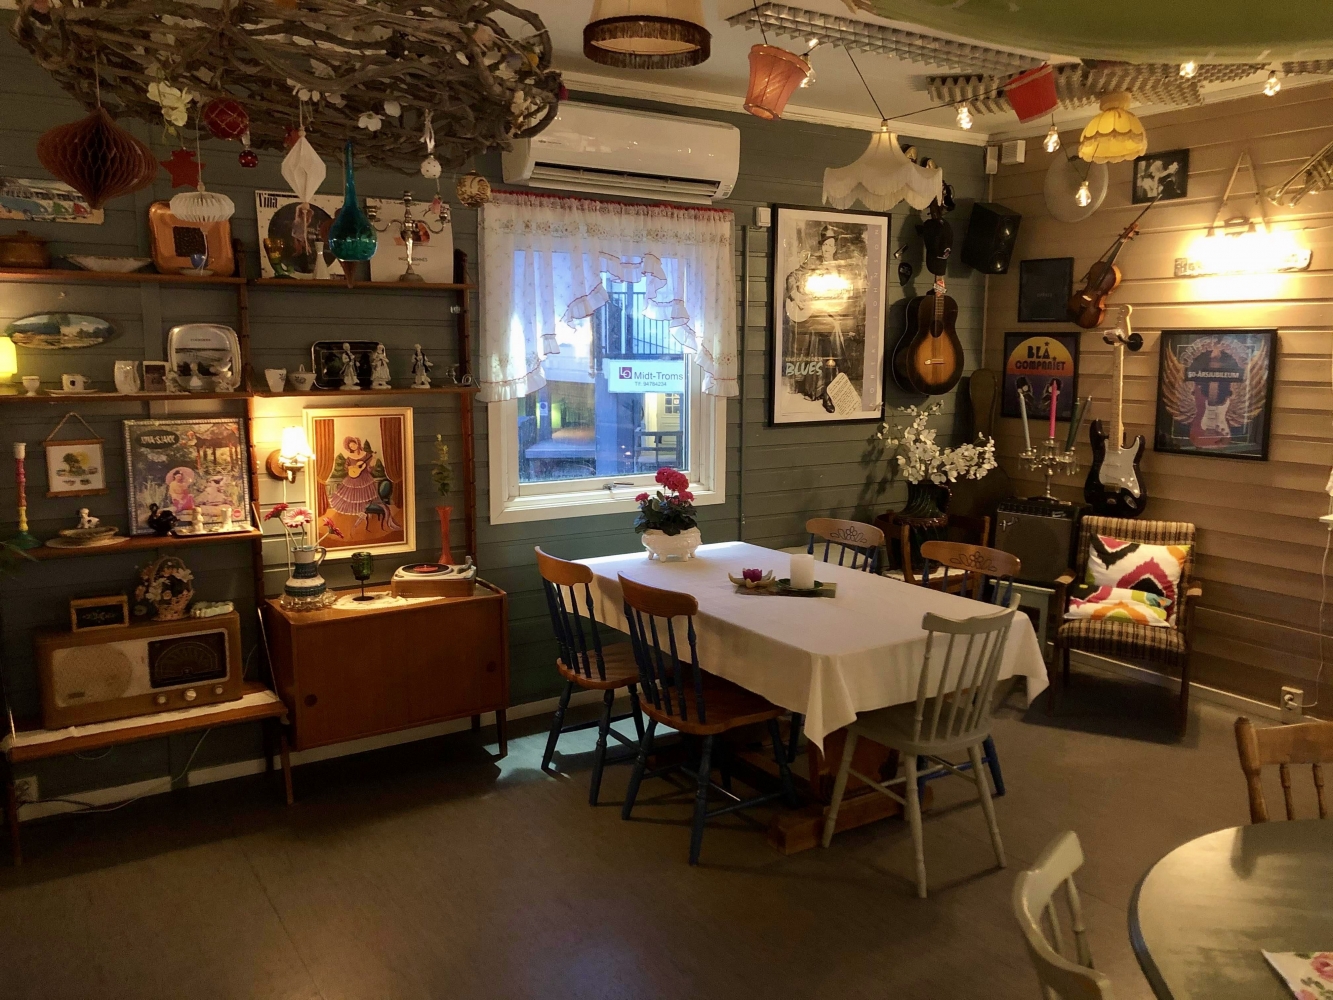 Inside of the retro cafe "Fruene på torget"